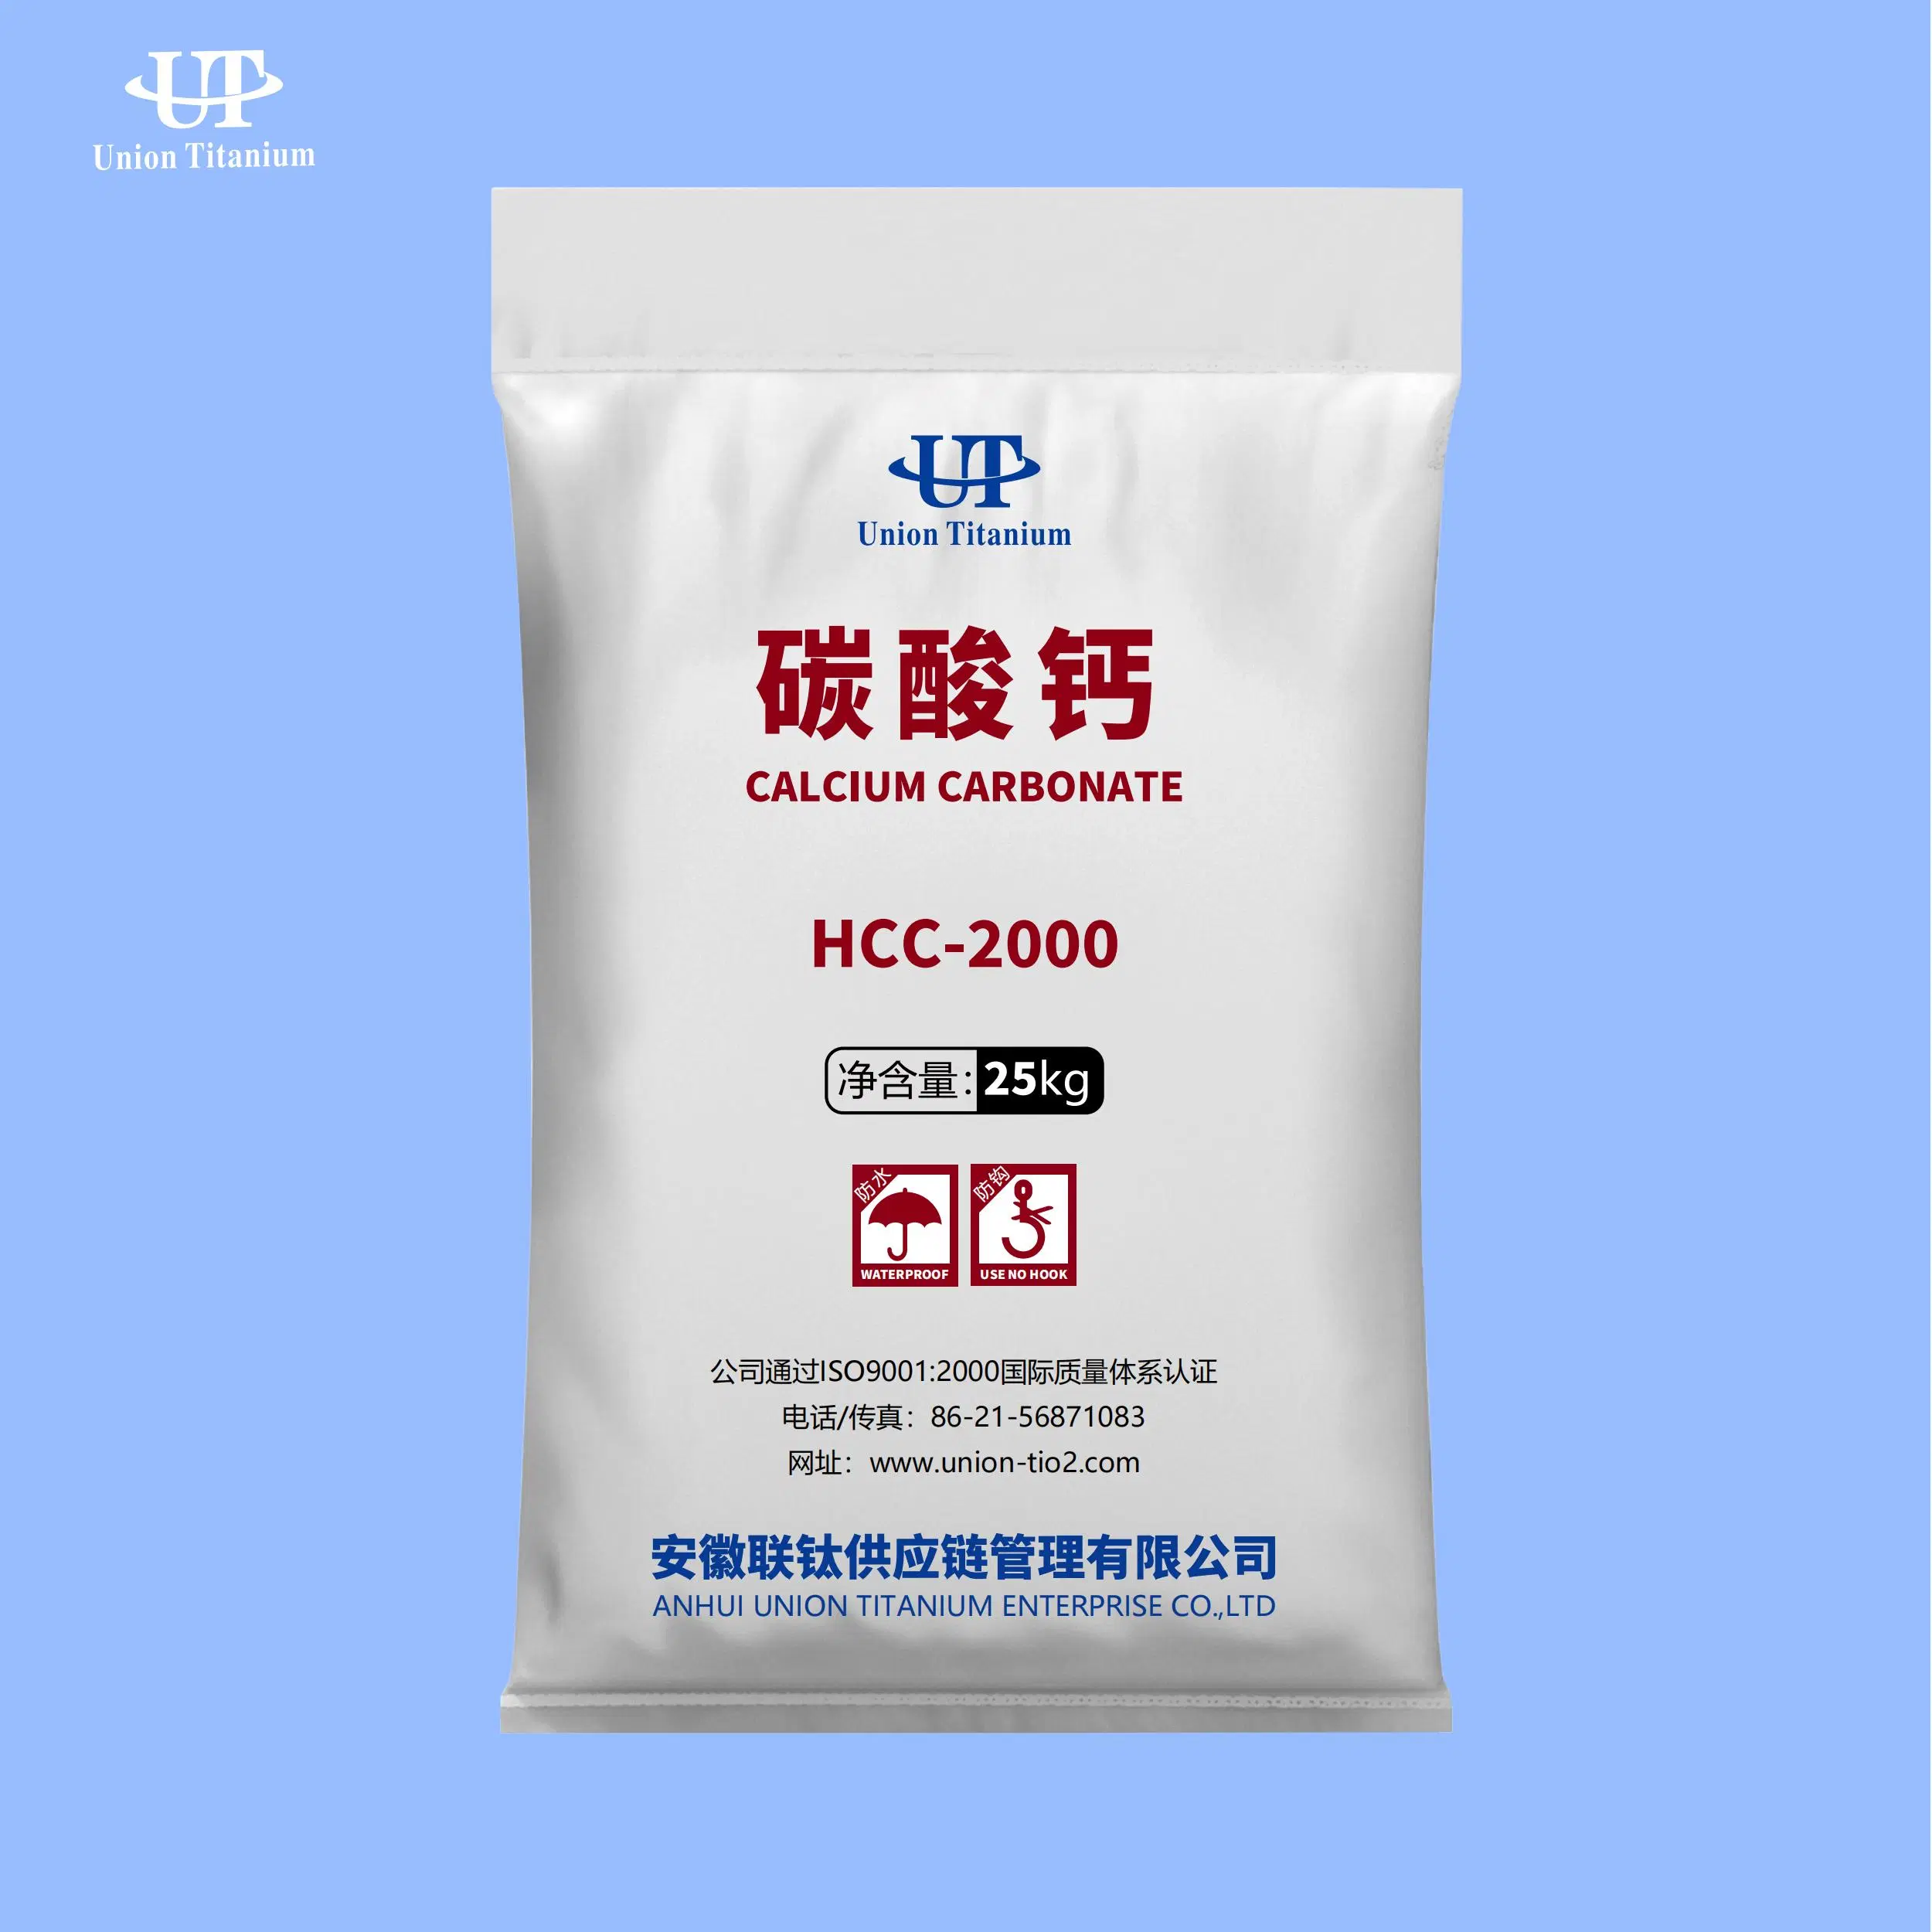 Calcium Carbonate Hcc2000 for Plastics and Paper